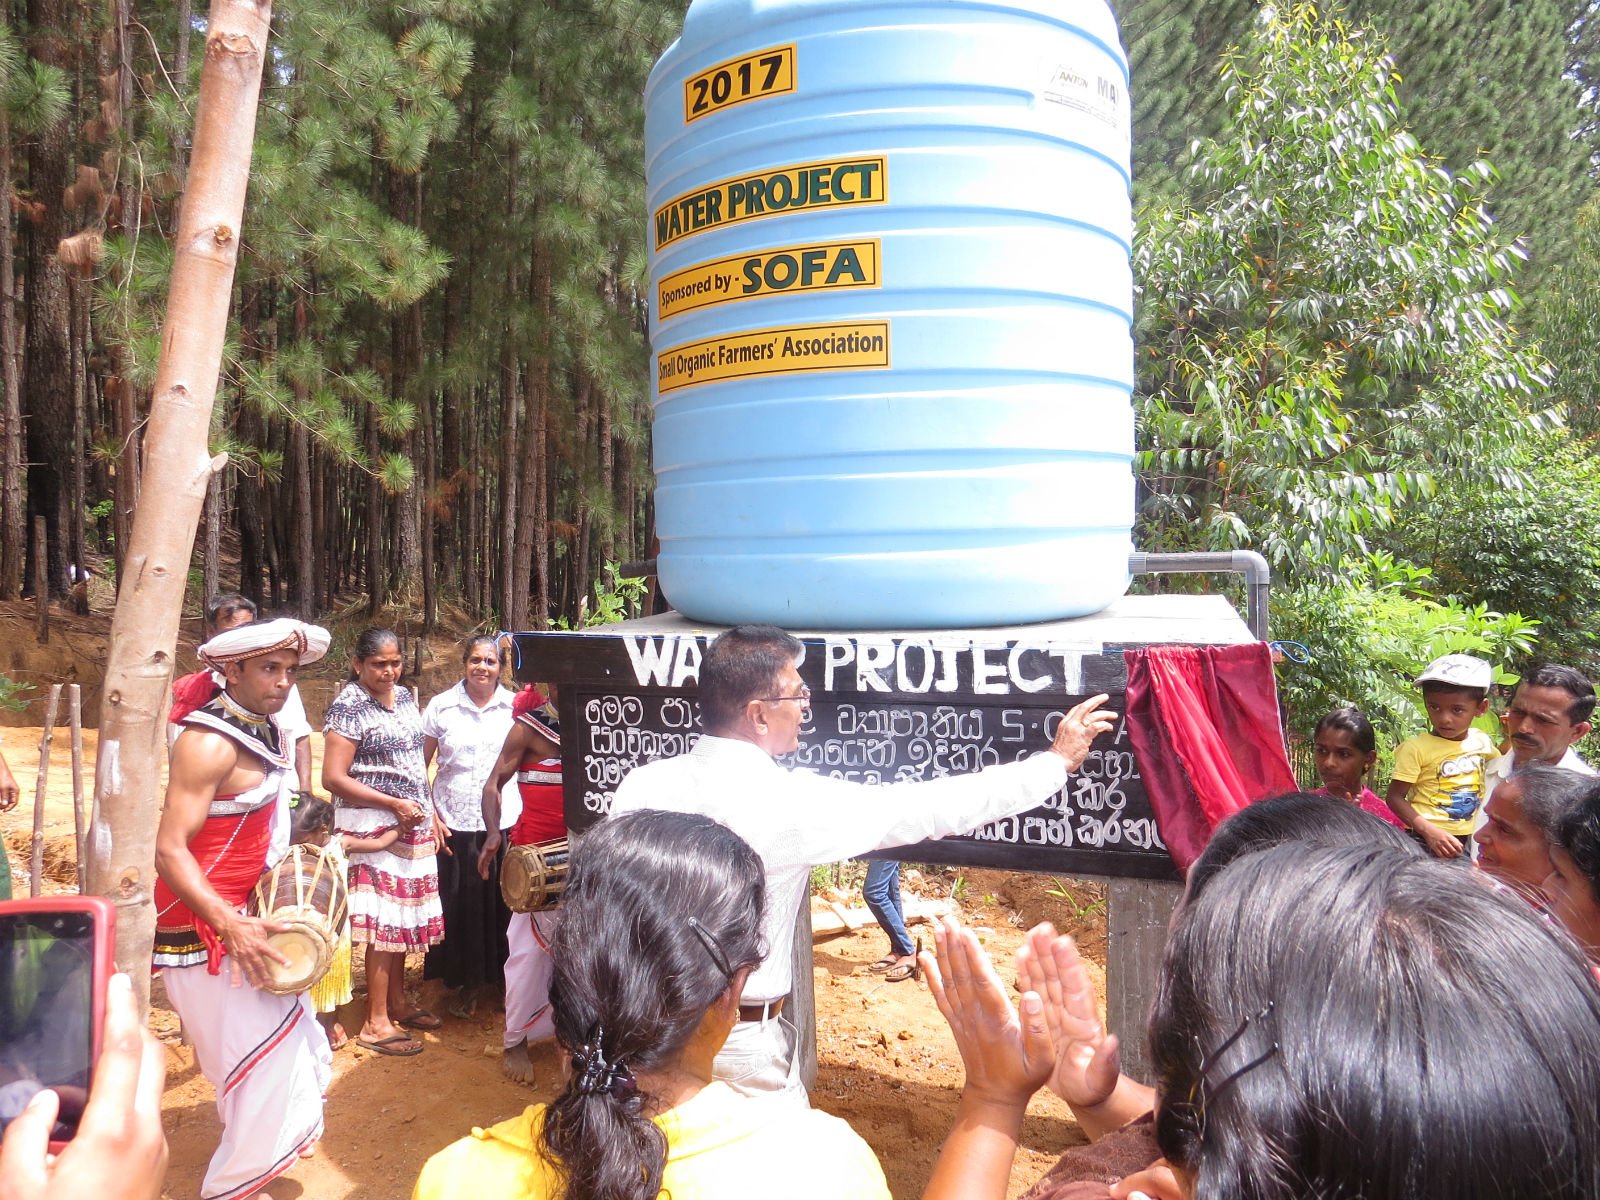 经过村民多番搓商，最后以投票方式决定水塔的安置点。SOFA 农民合作社在村内设立了一个贮水器，改善小农户的生活，村民对此兴奋不已。 图：SOFA